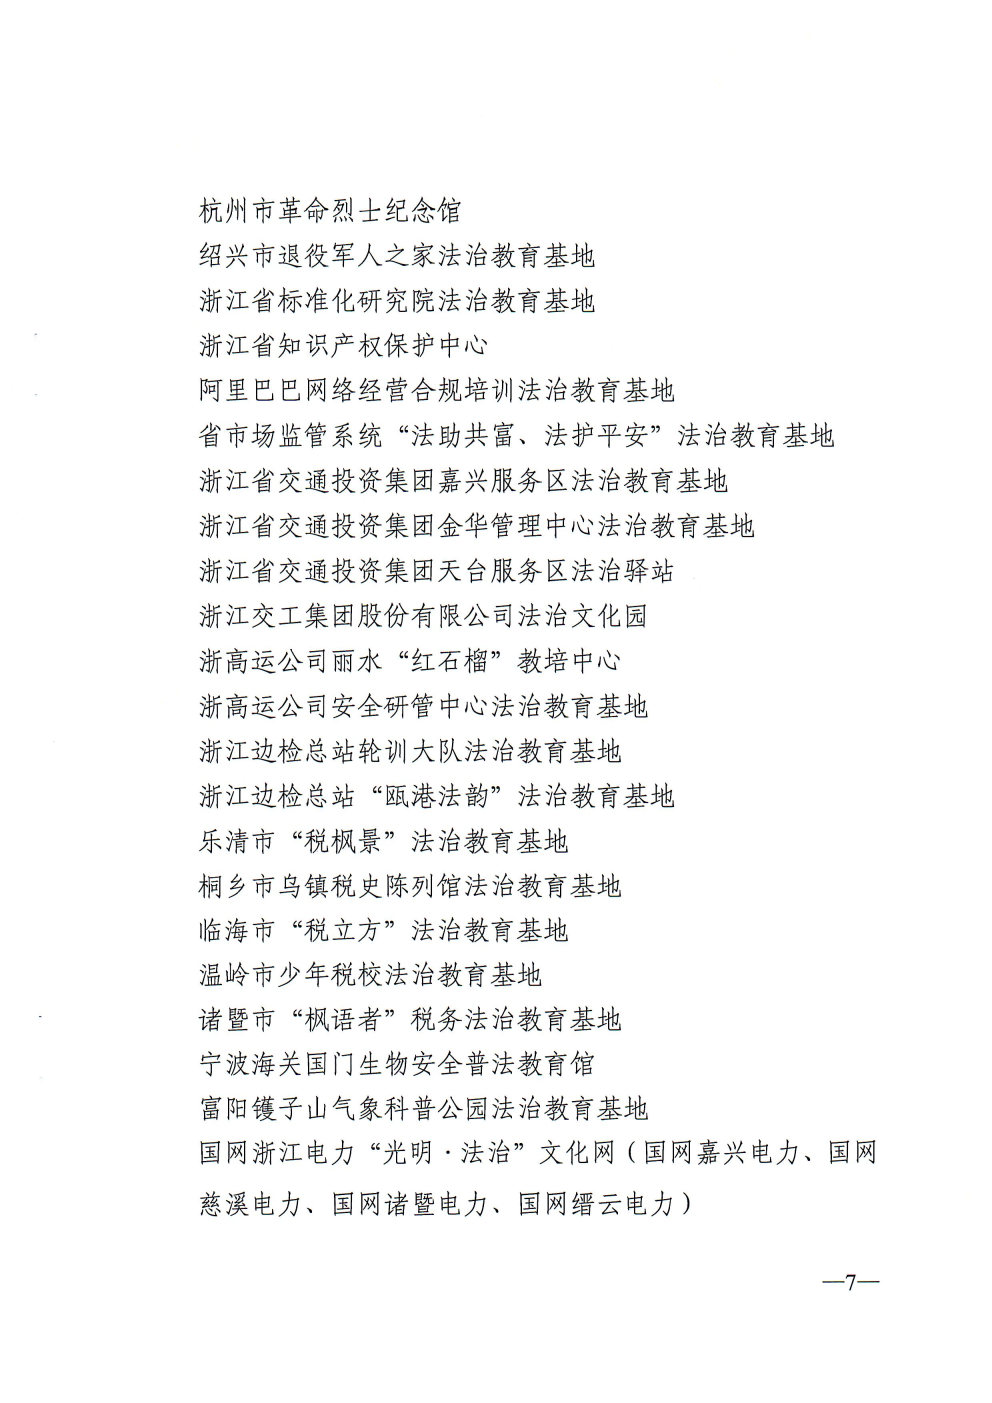 关于命名第二批浙江省法治宣传教育基地的通知_Page7_Image1.jpg